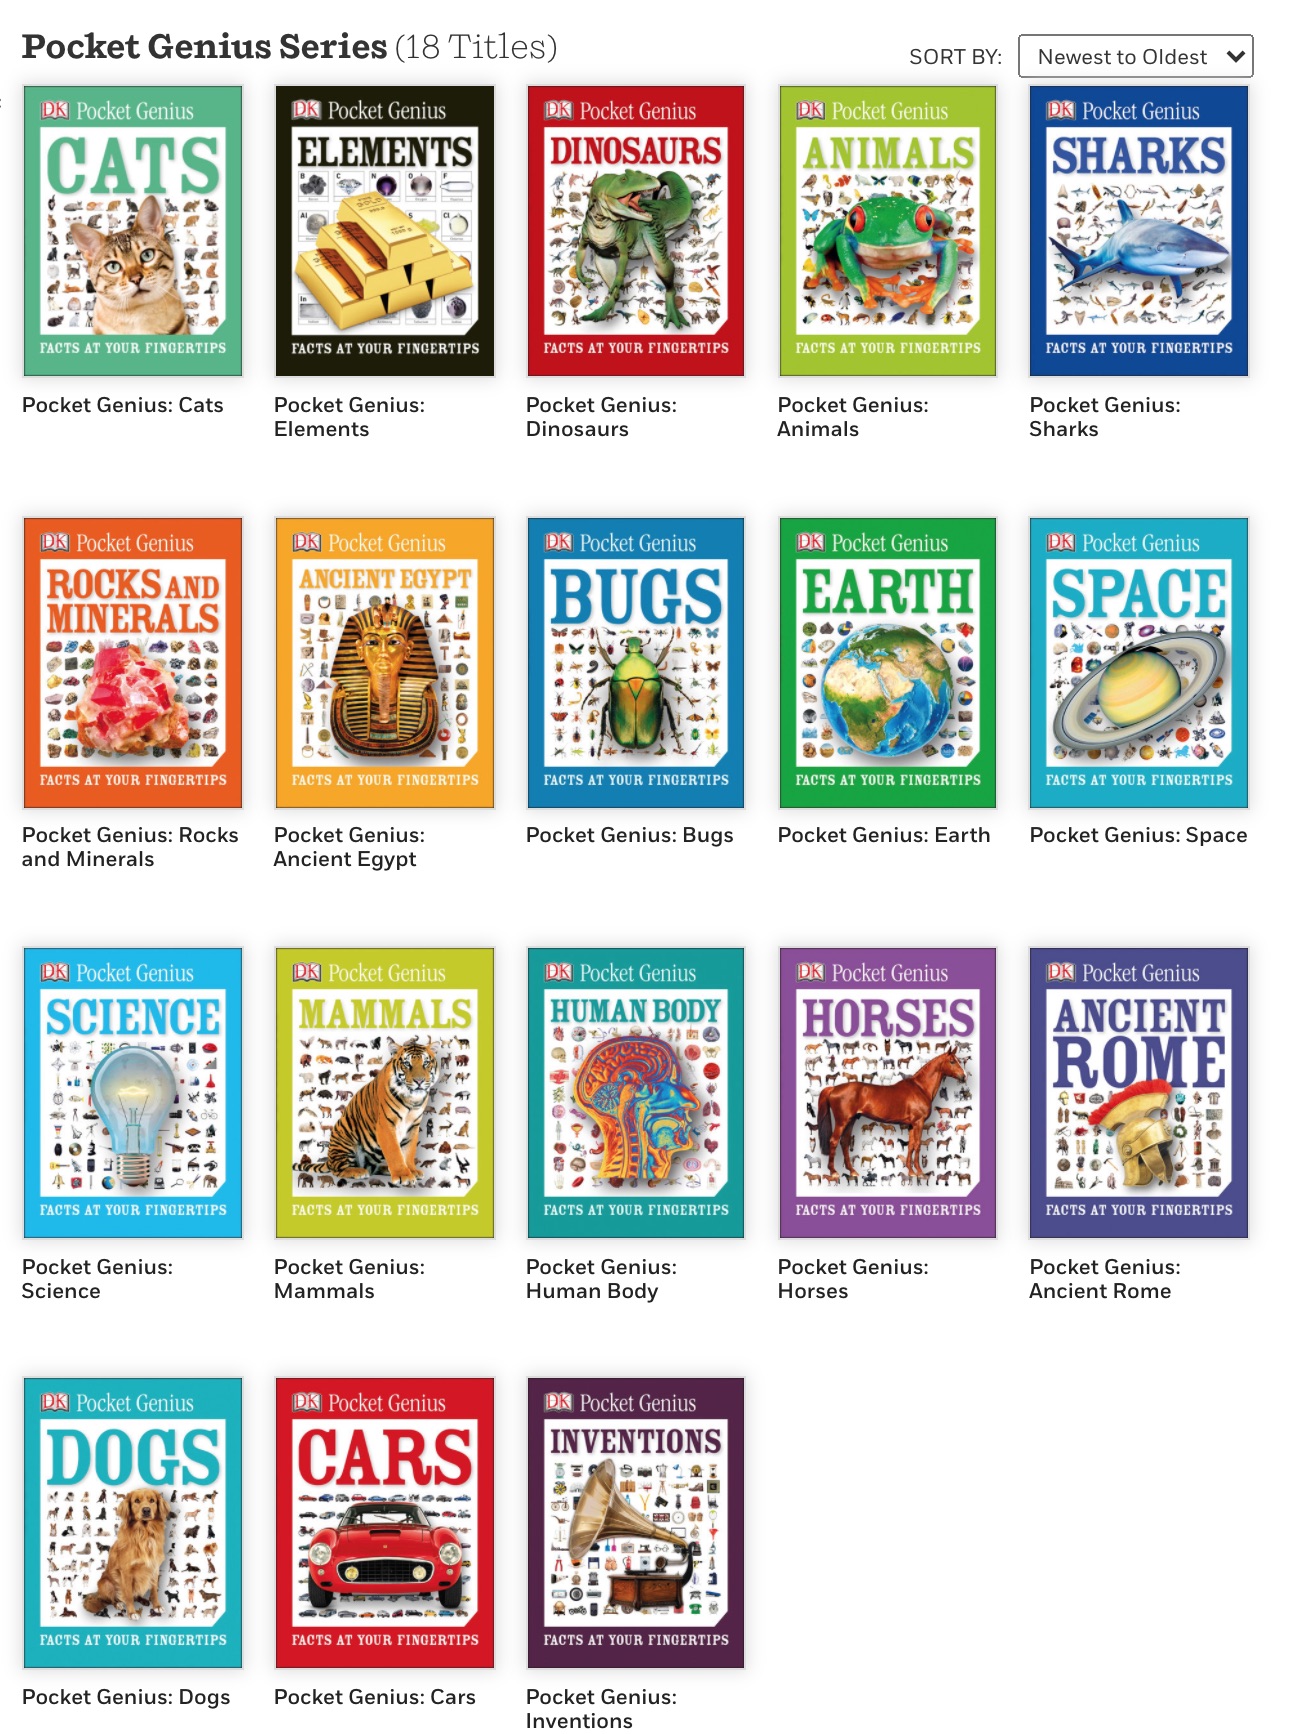 全套dk Pocket Genius百科知识口袋书全18本pdf 原版英文读物 我的小孩的成长分享